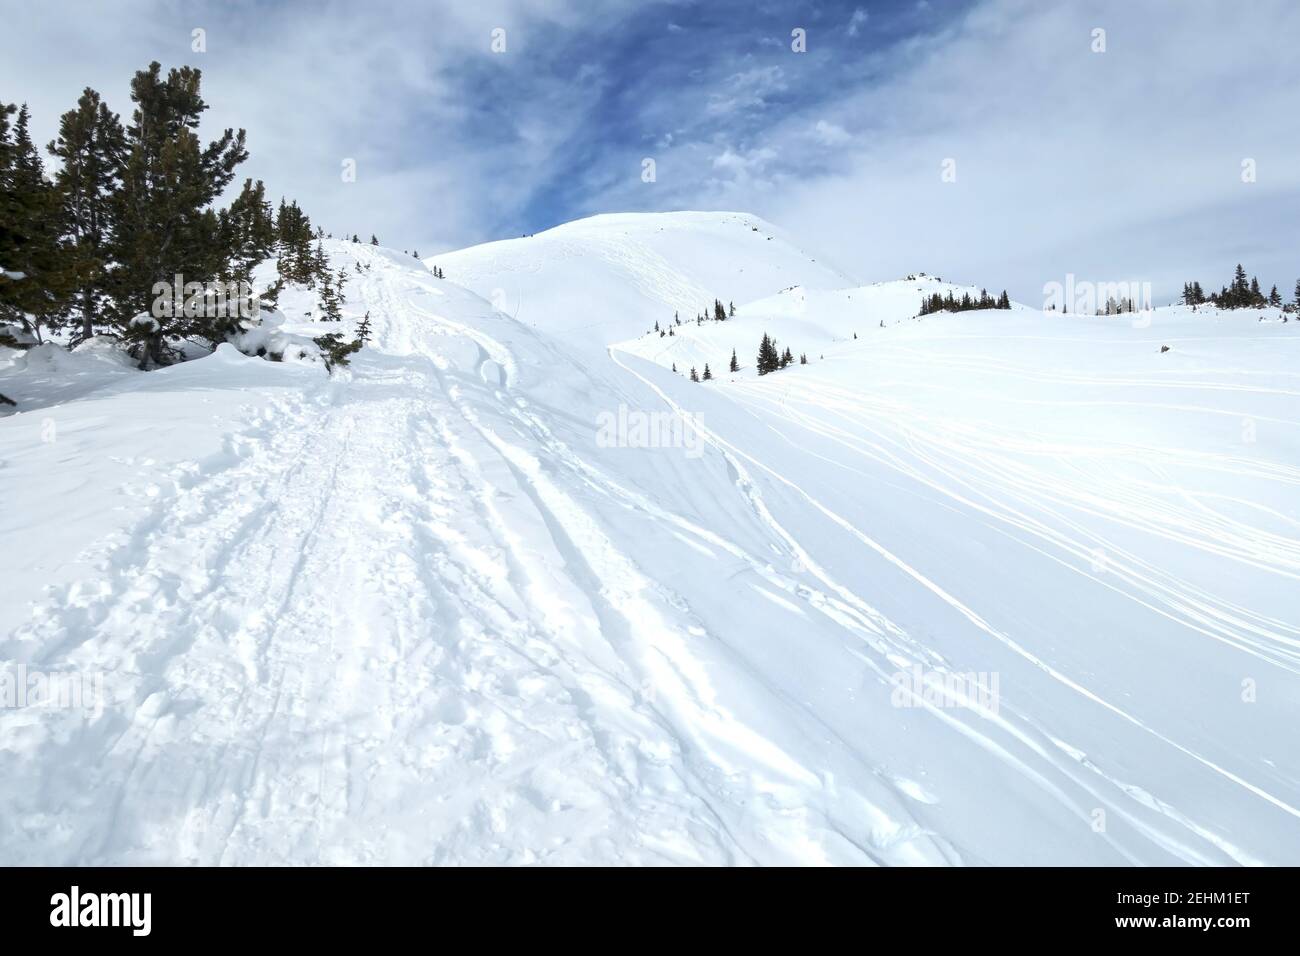 Schneeschuh- und Ski-Tracks in White Snow Klettern entfernt Mountain Peak. Landschaftlich reizvolle Banff National Park Landschaft an einem kalten Wintertag in den kanadischen Rockies Stockfoto